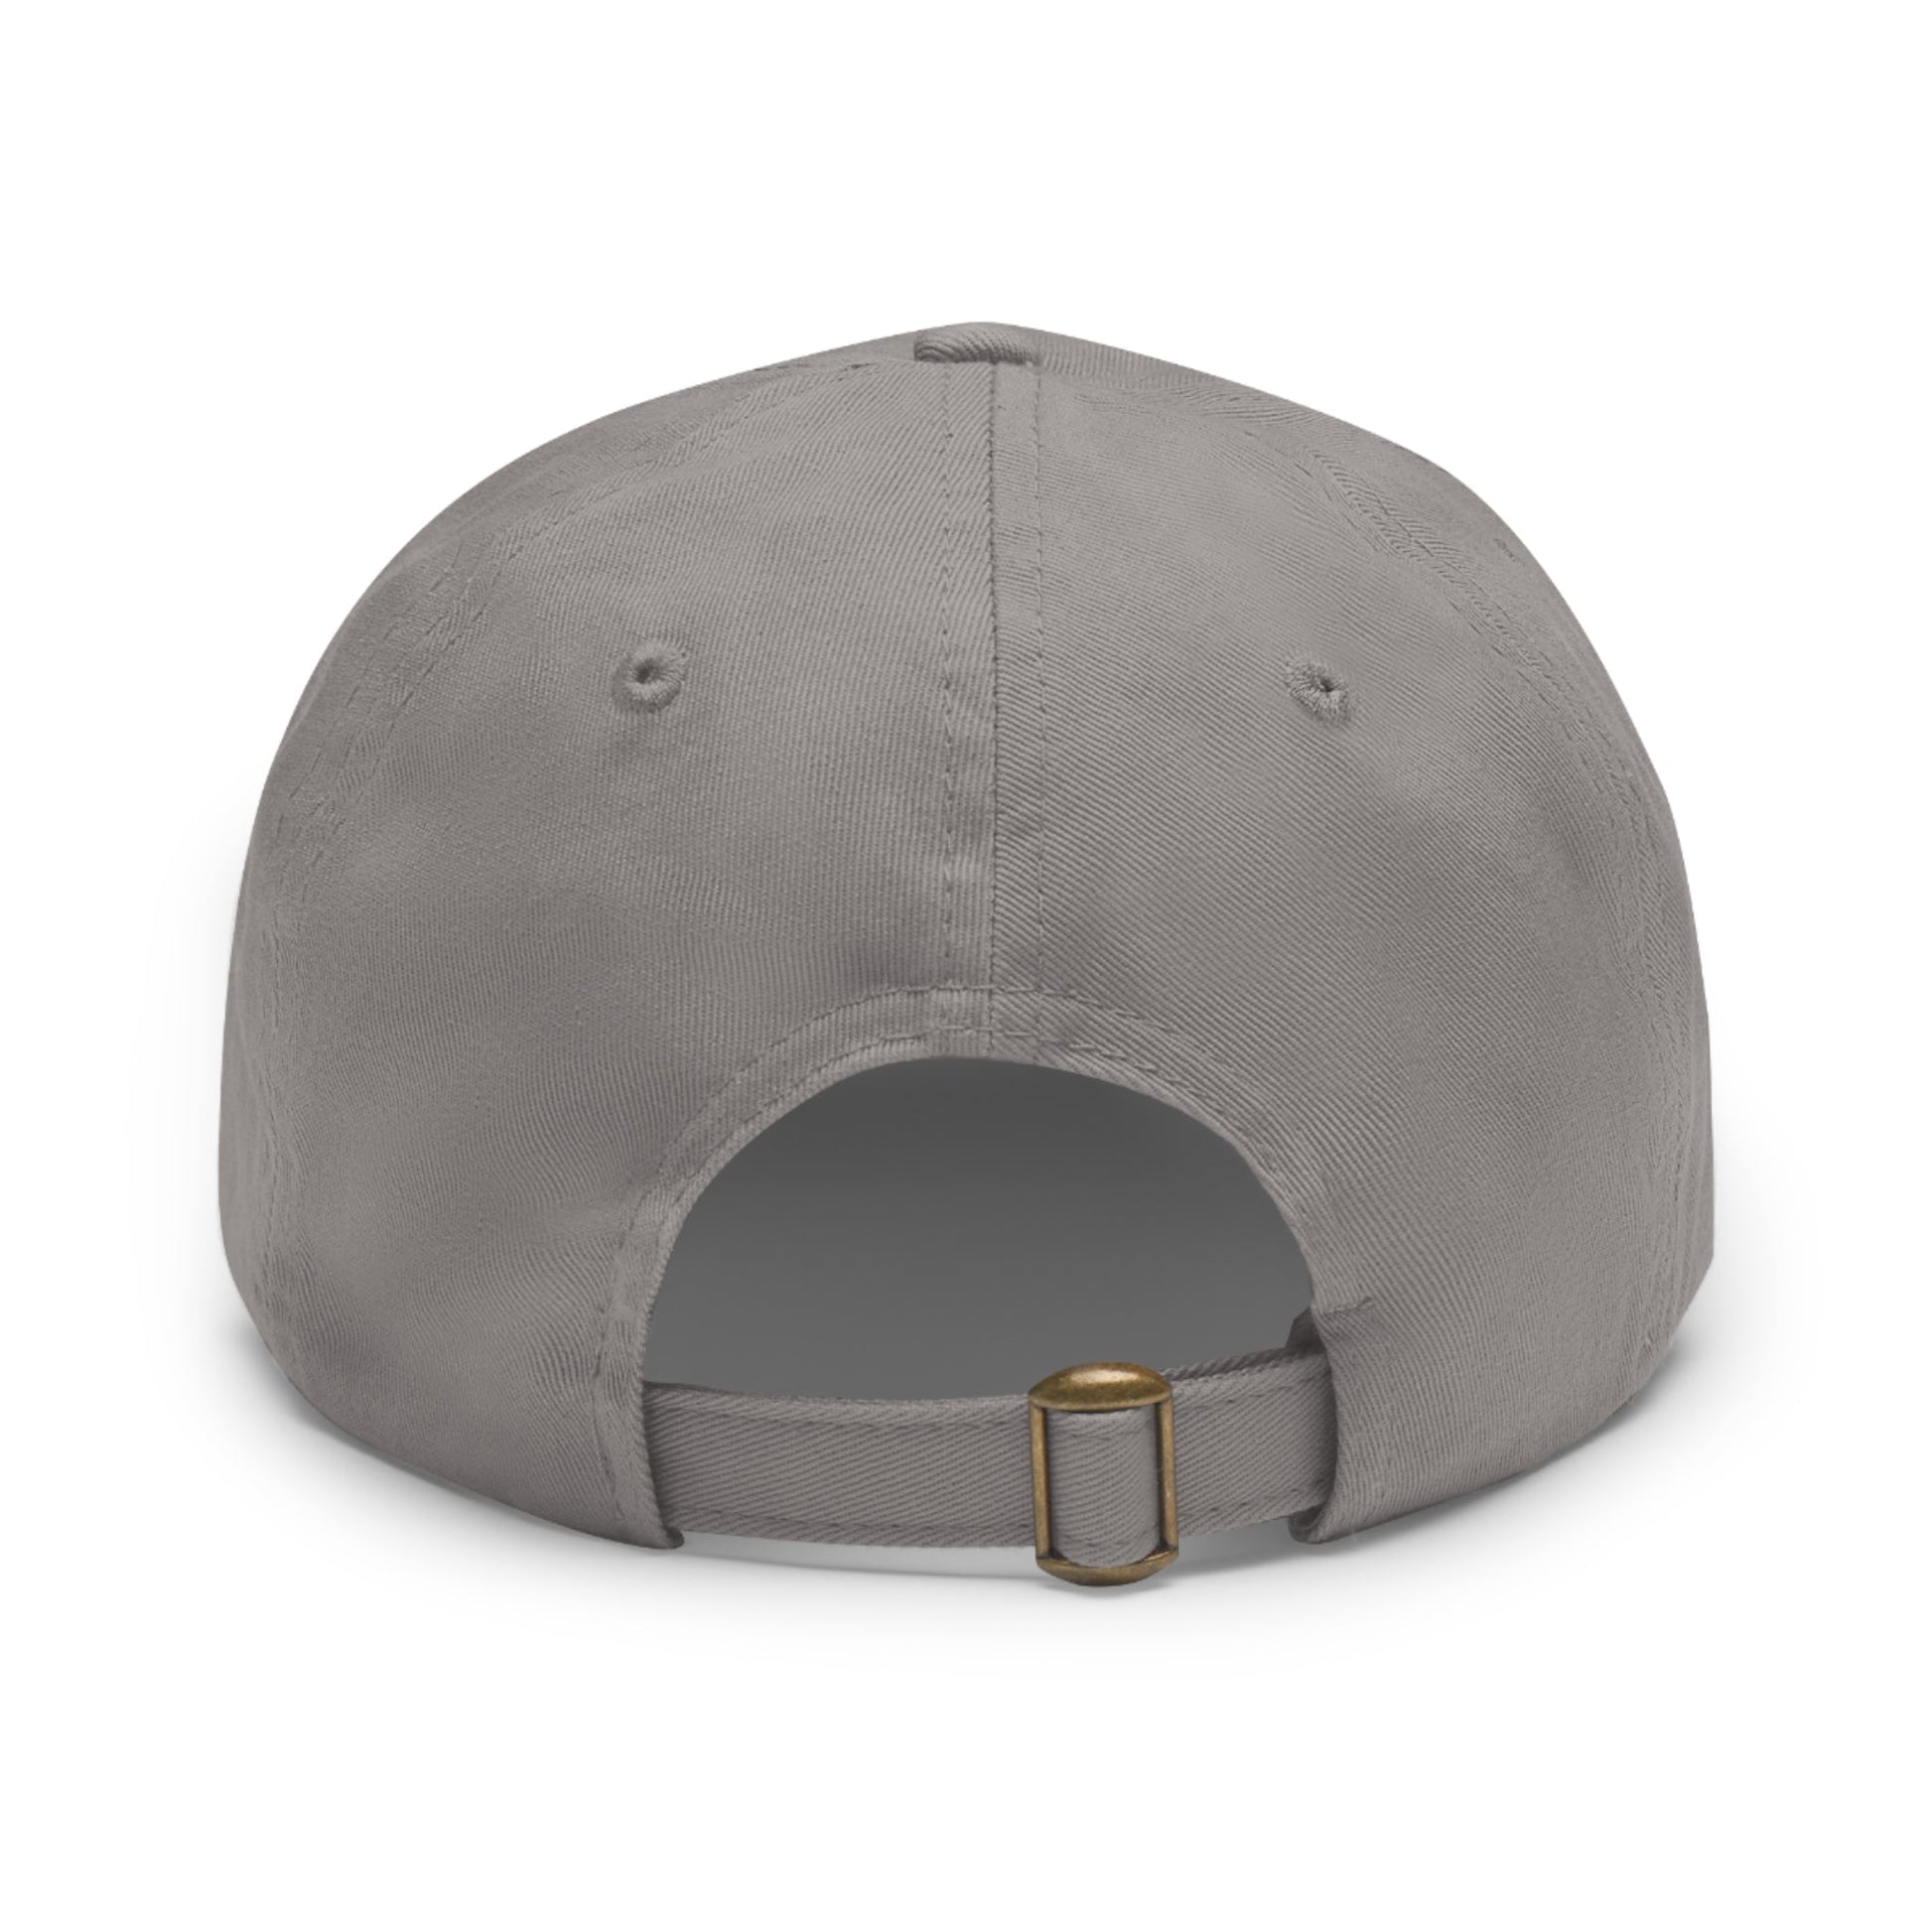 Brittany Spaniel | Dad Hat - Detezi Designs-10203113156405461573